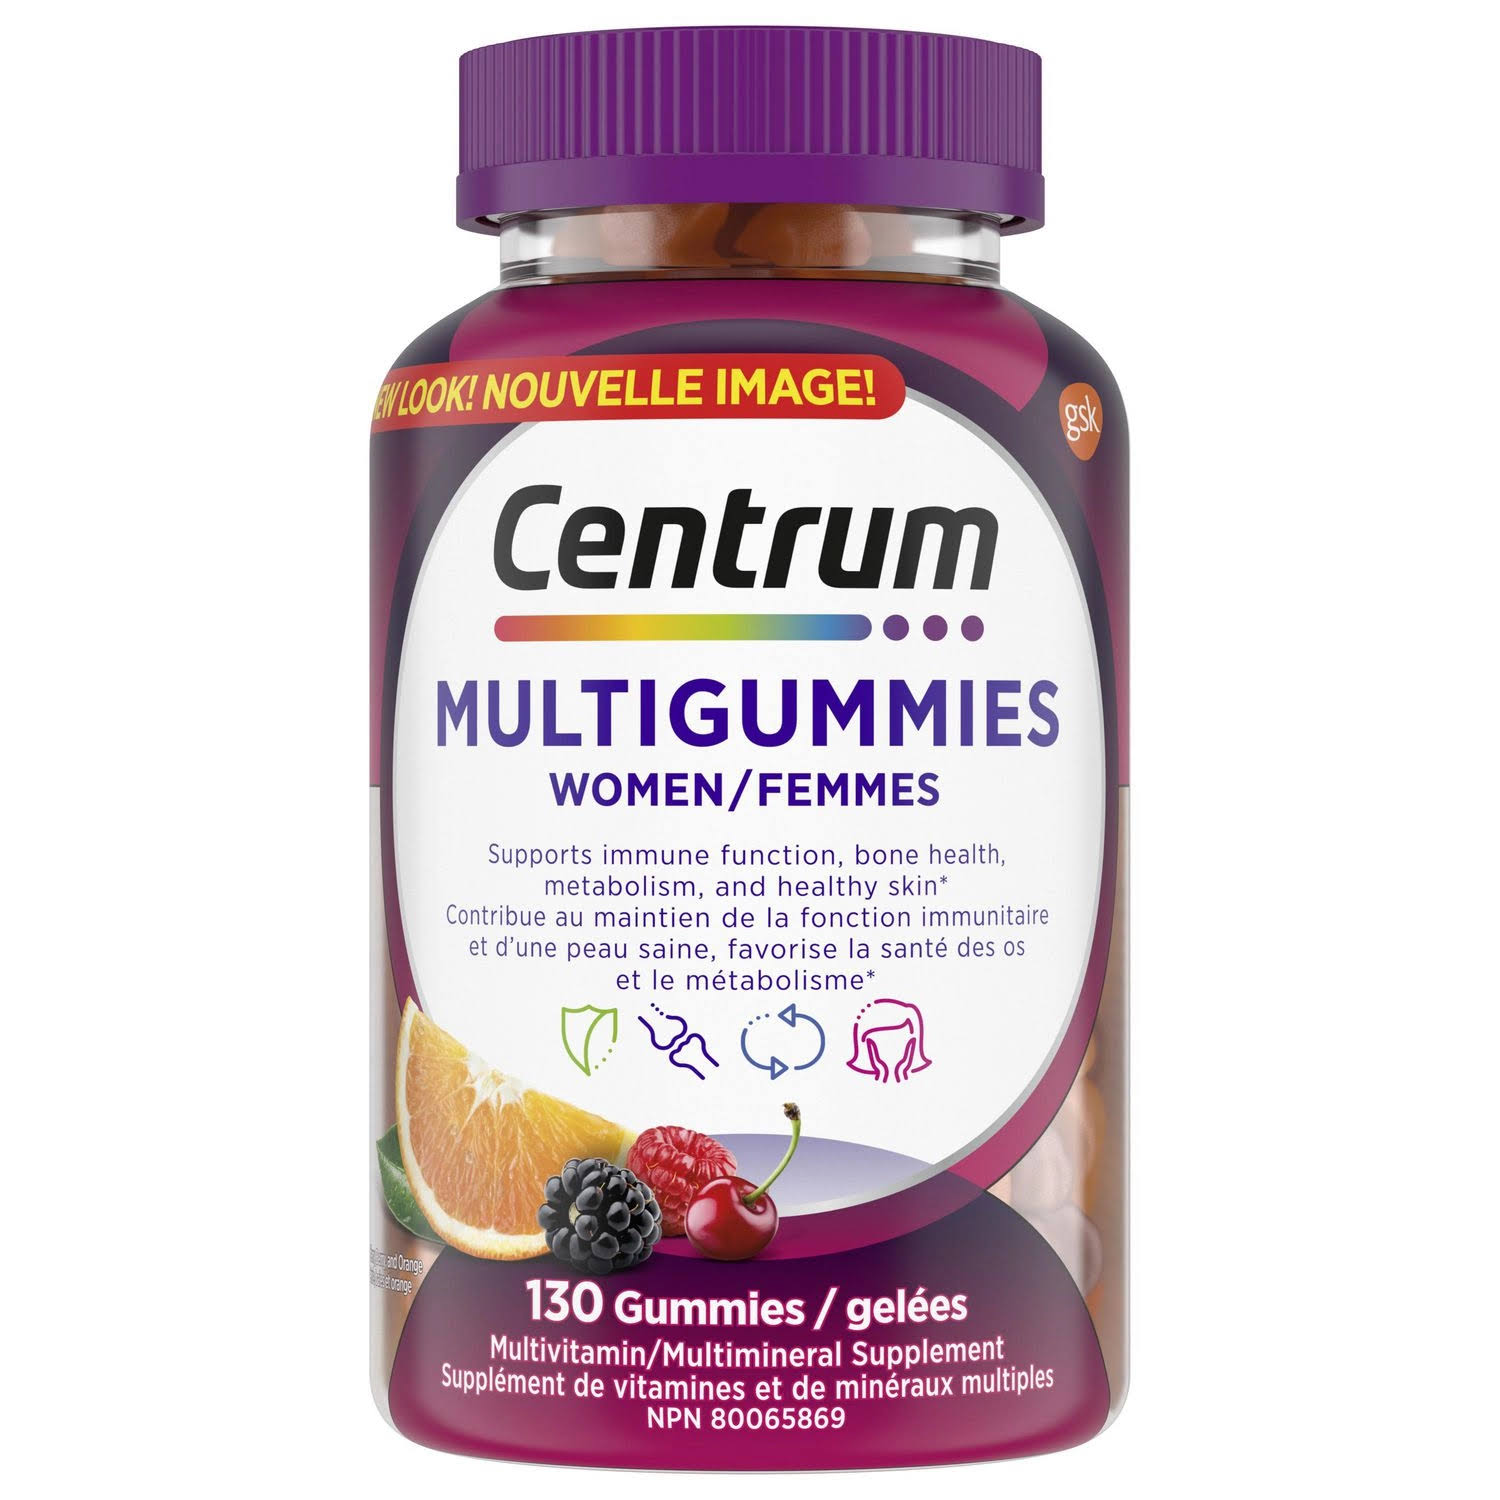 Centrum MultiGummies Women's Multivitamin Supplement Gummies, 130 Count 130 G